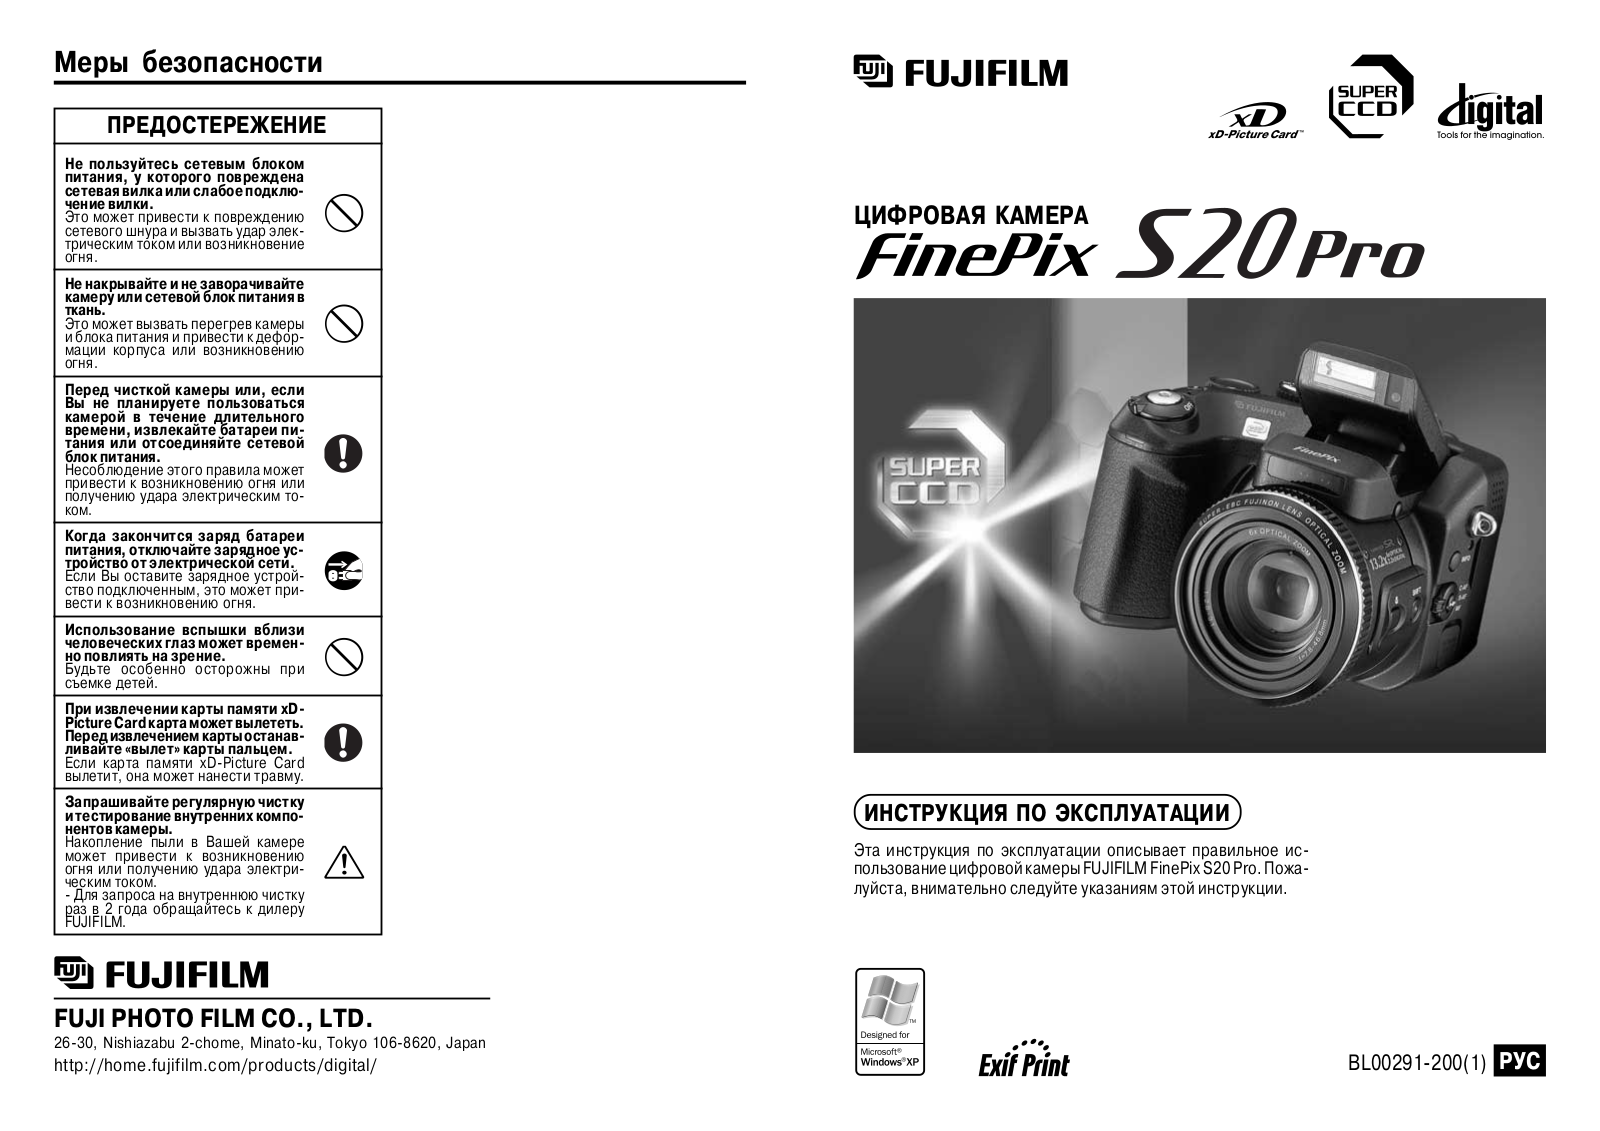 Fujifilm FinePix S20 Pro User Manual